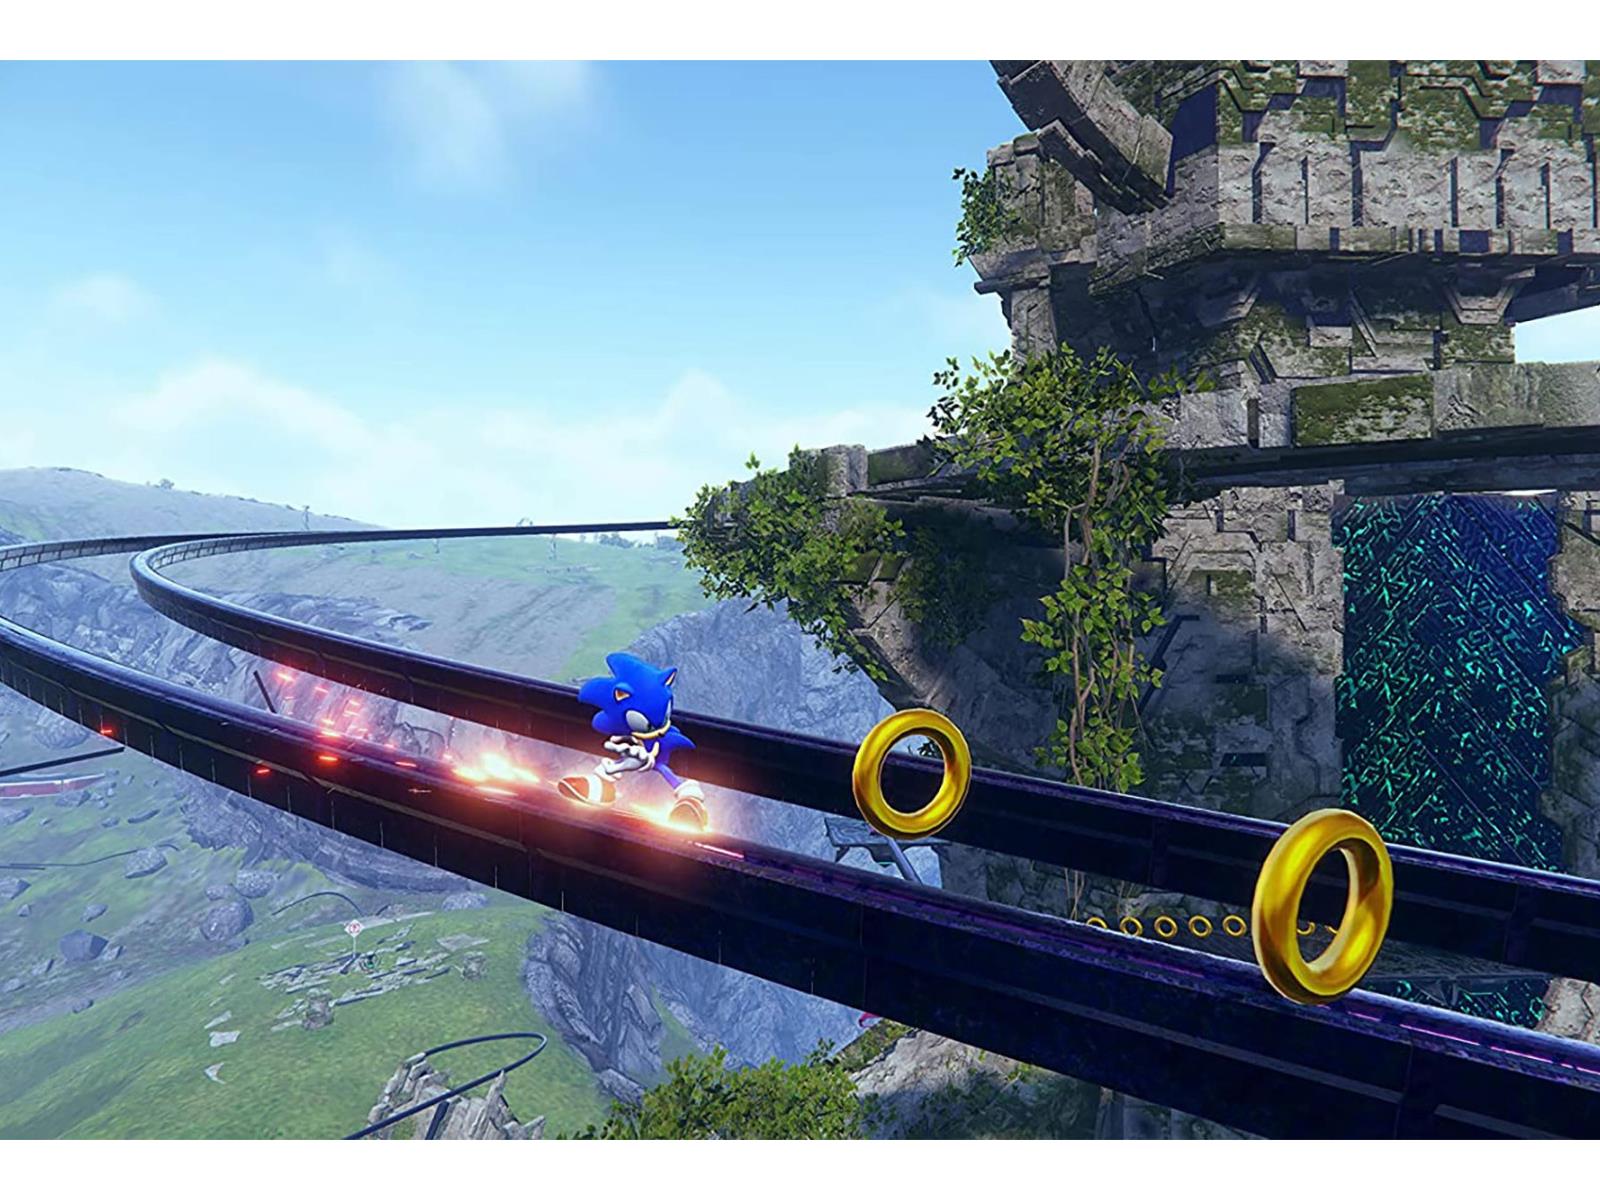 Metacritic - Sonic Frontiers [PS5 - 72]